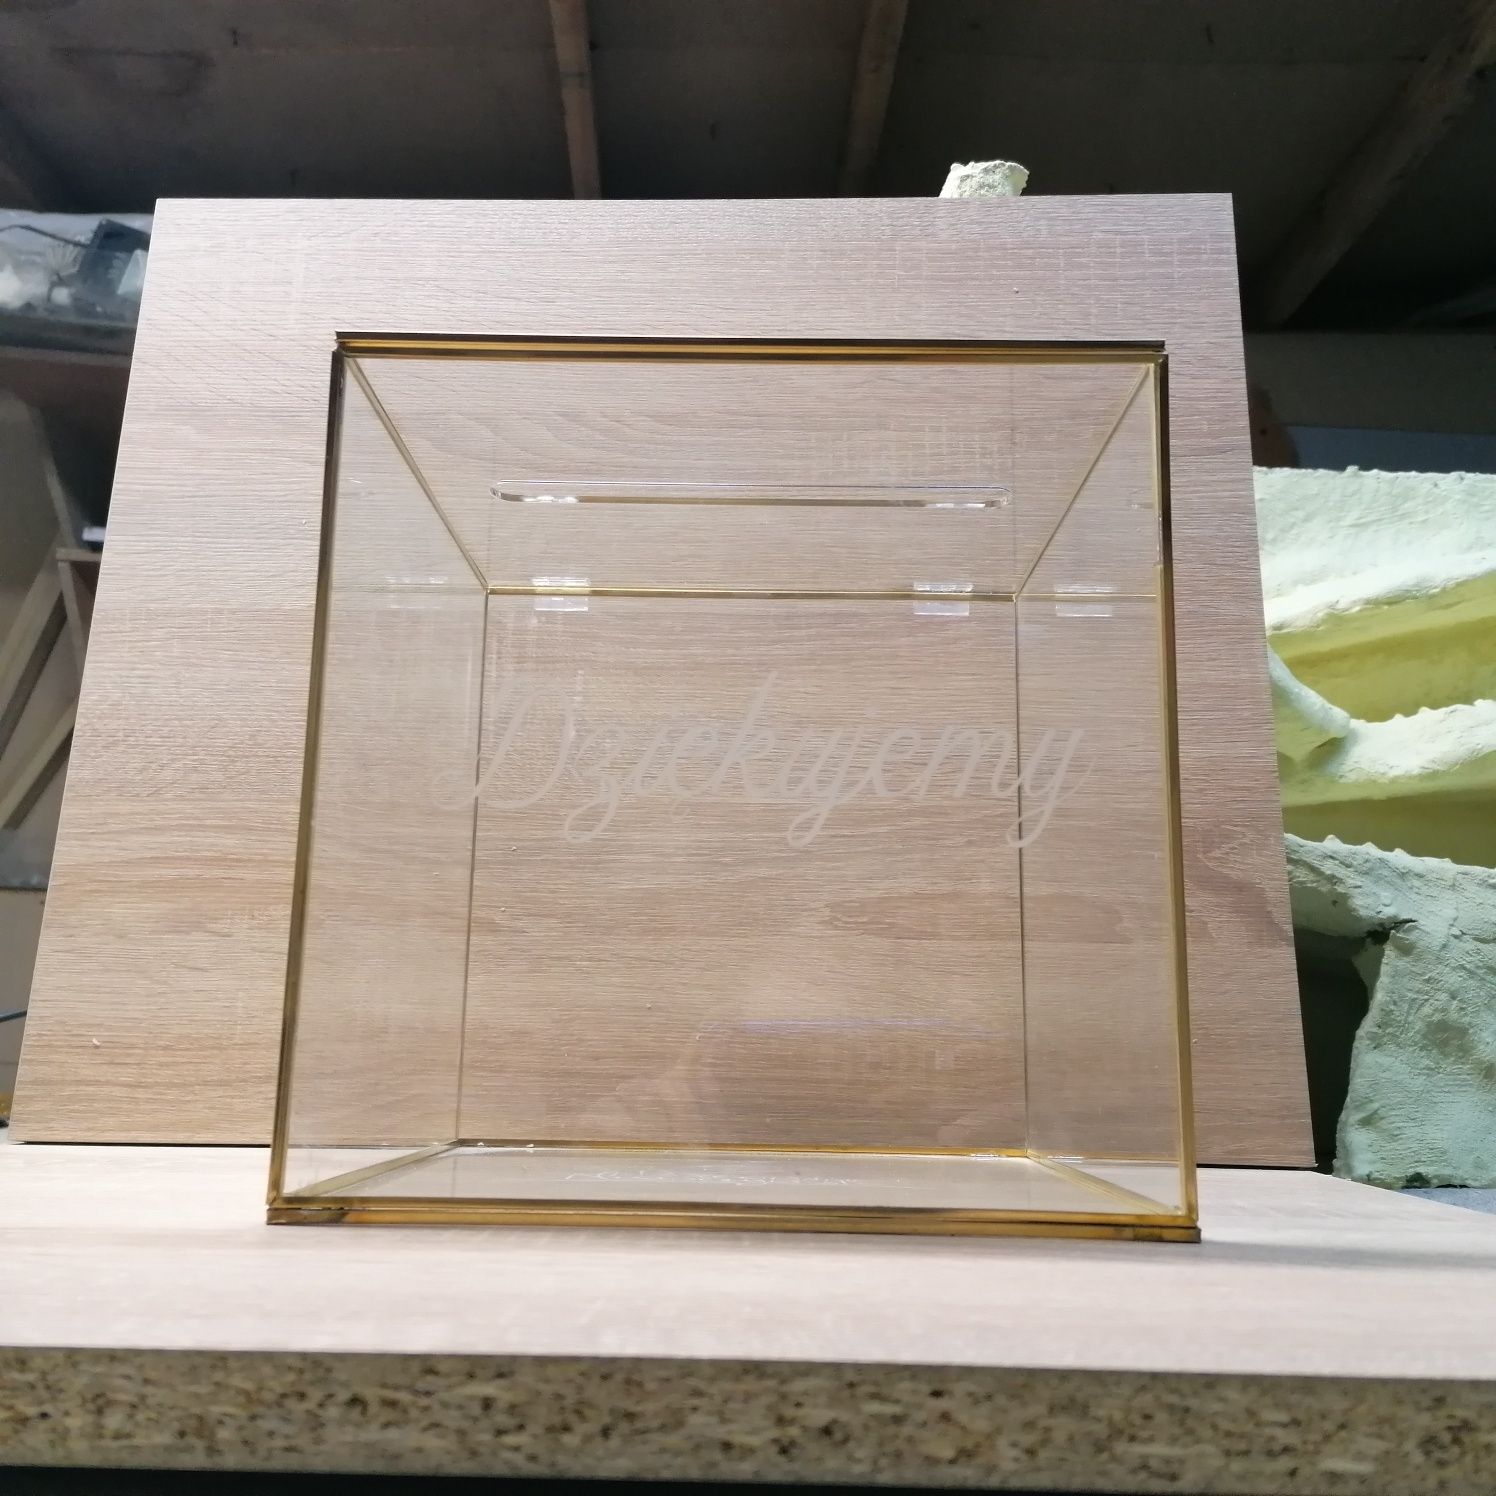 Zestaw ślubny skrzynka pudełko na kartki ślubne obrączki szklane złote